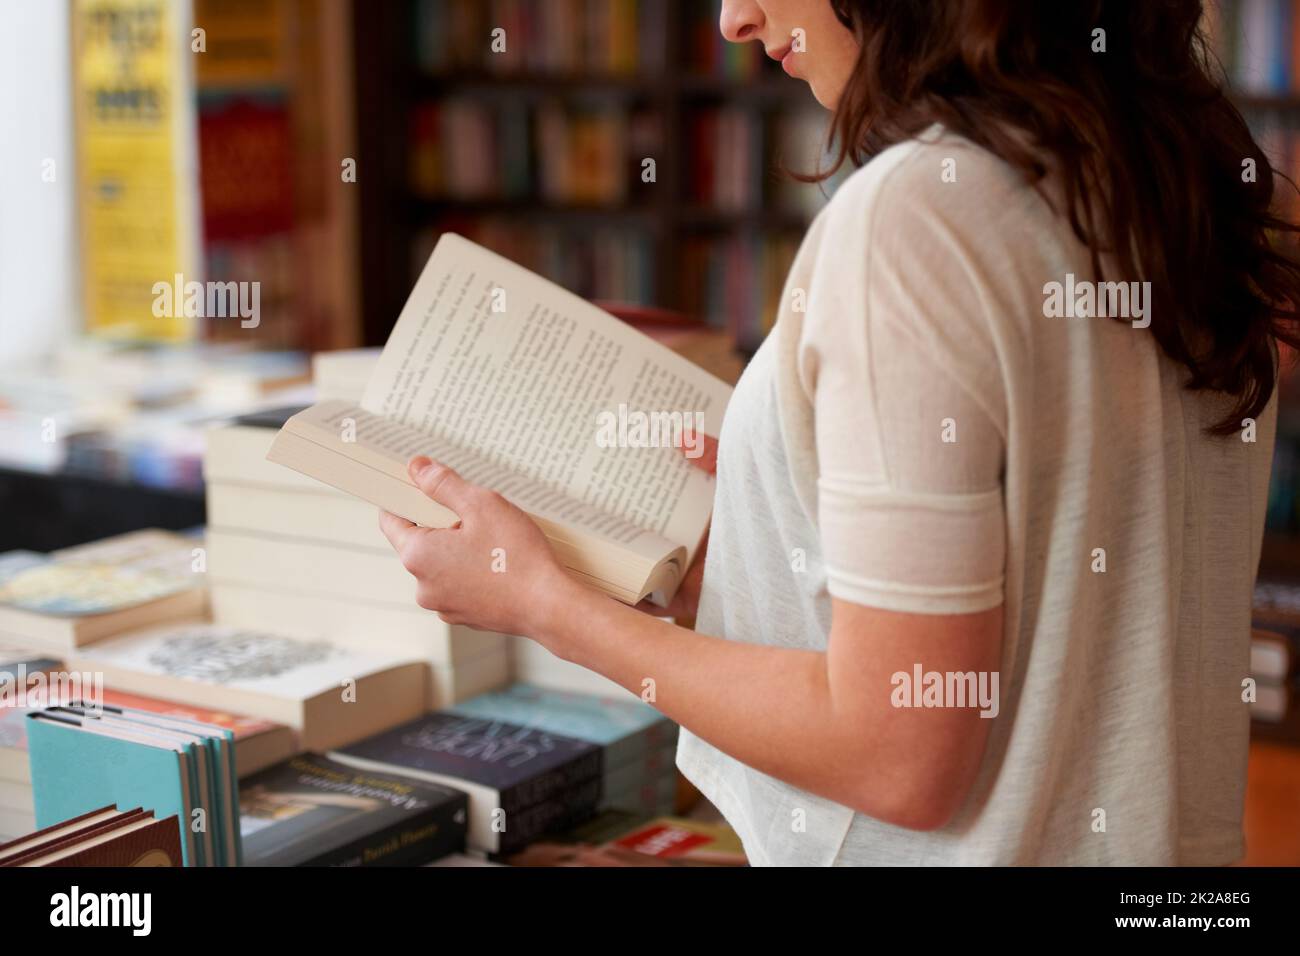 Verloren in den Seiten. Eine ausgeschnittene Aufnahme einer jungen Frau, die ein Buch liest, während sie in einer Buchhandlung steht. Stockfoto